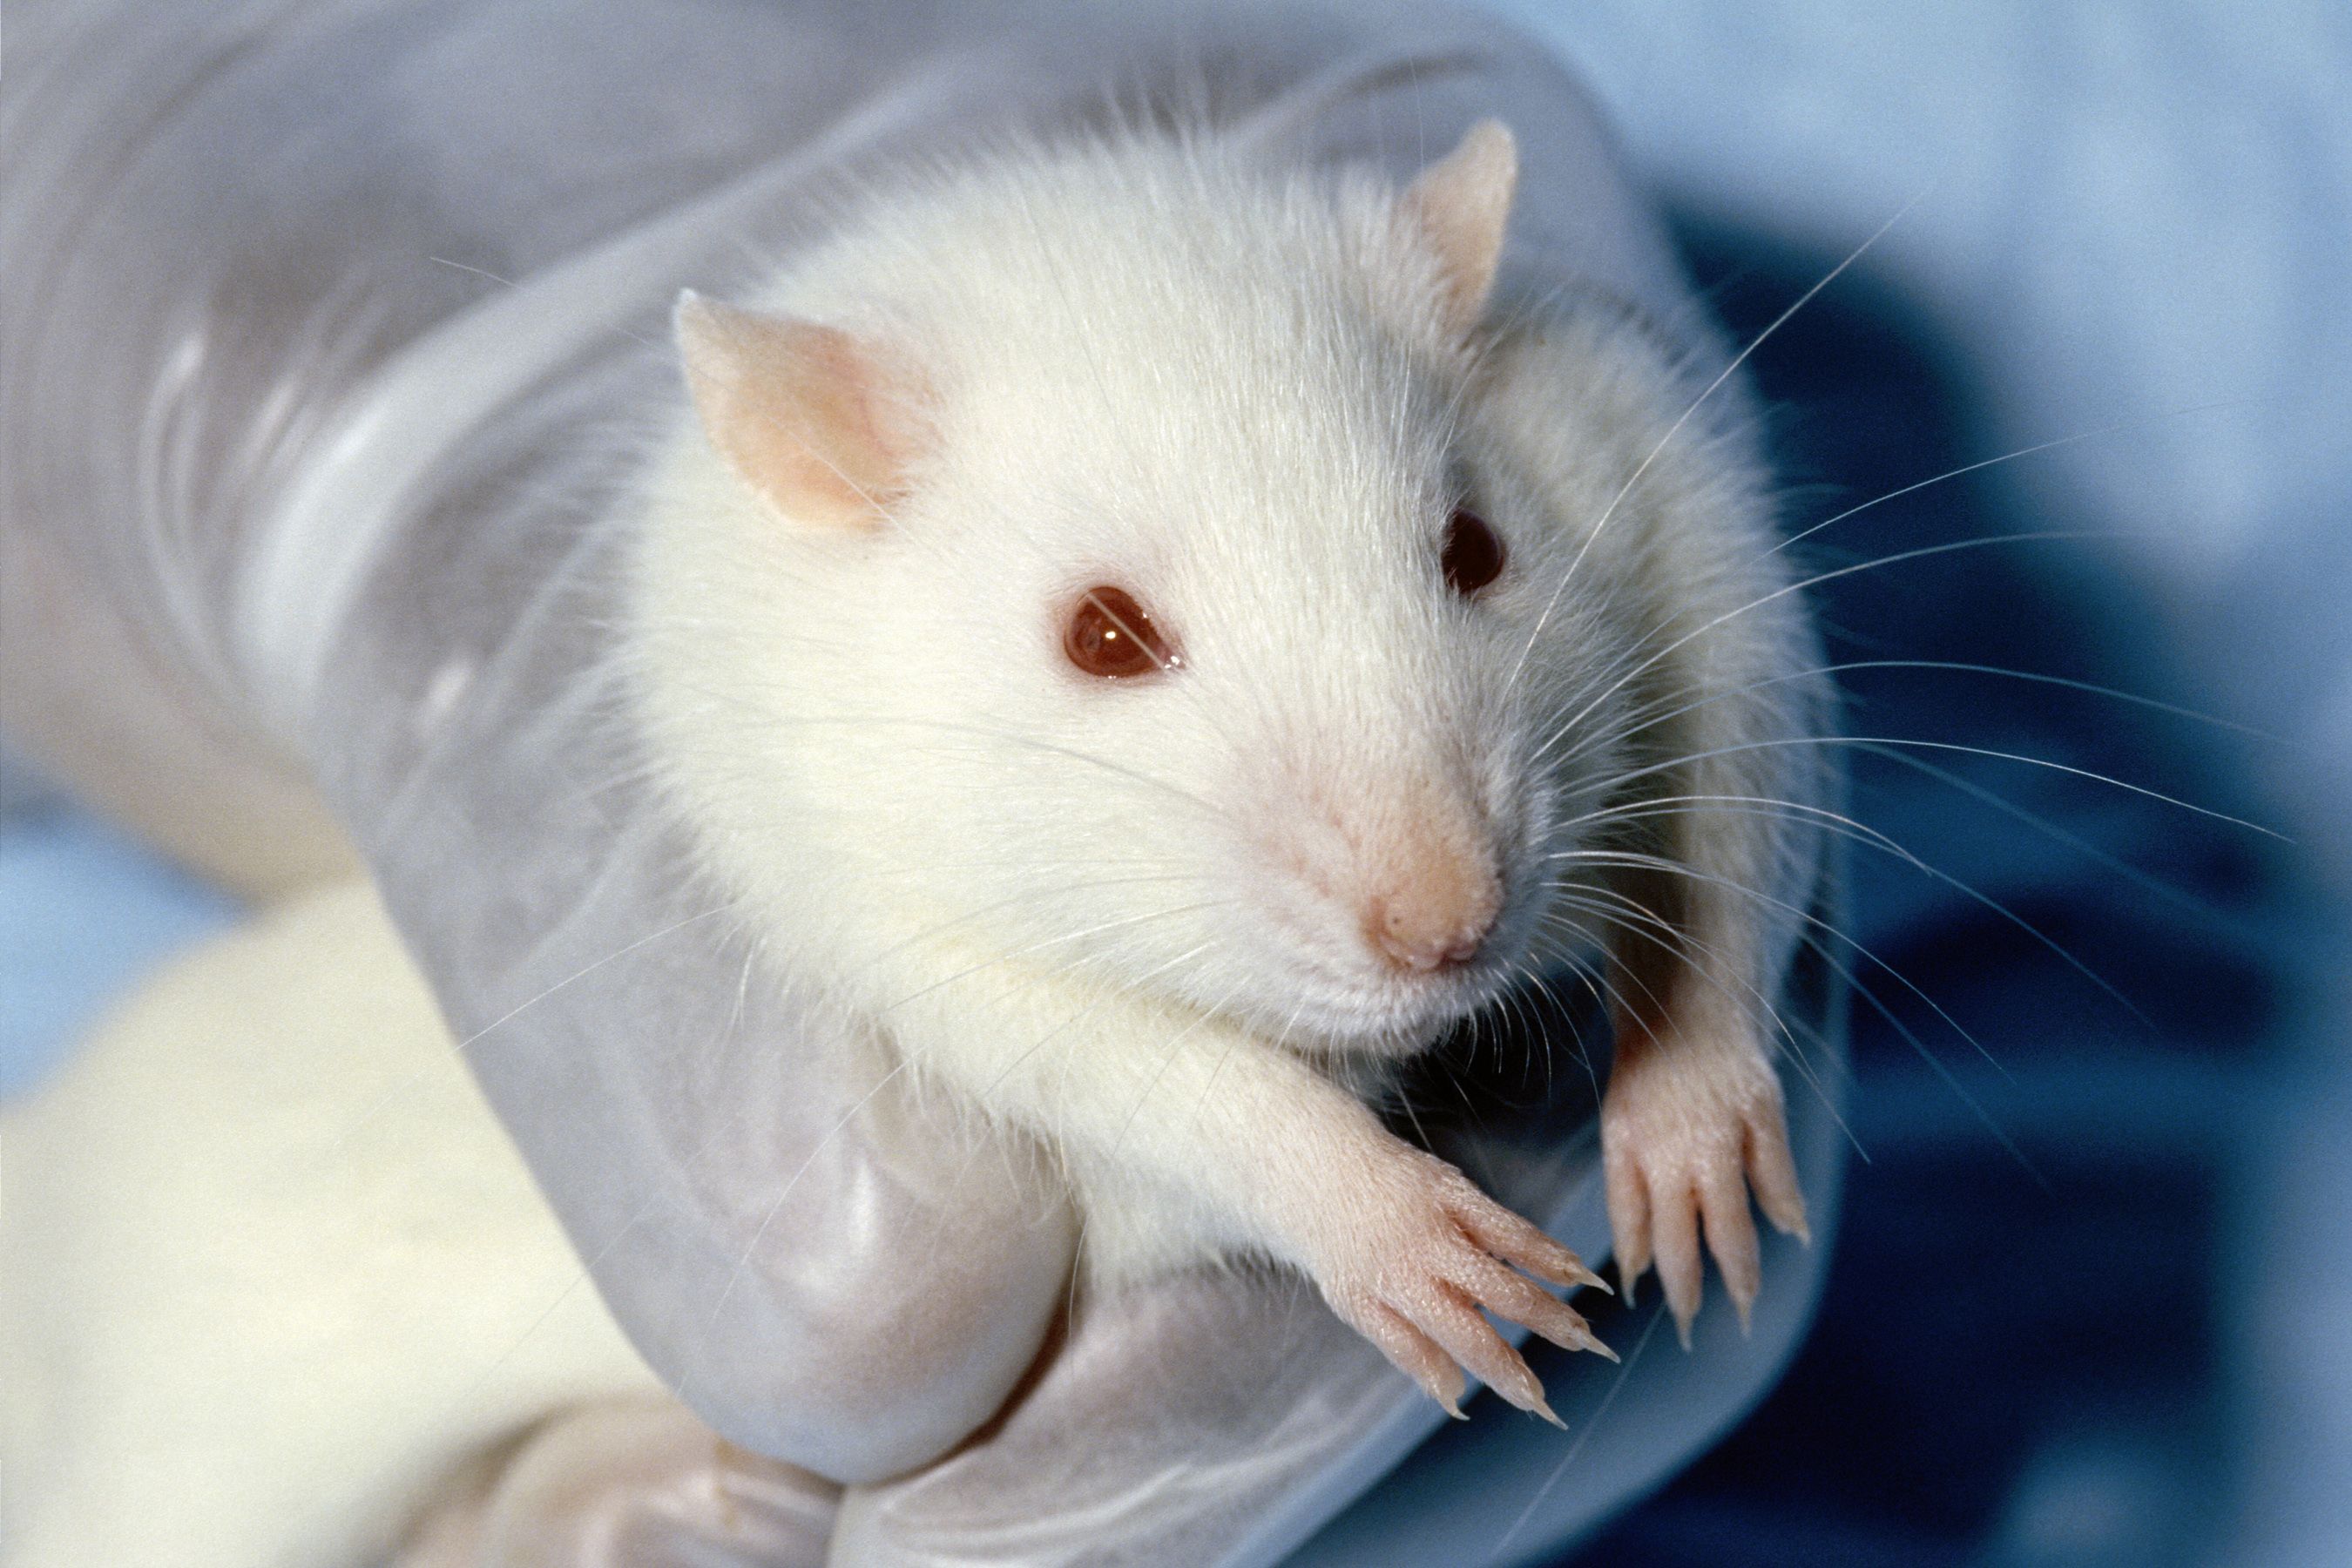 Denna råtta, som använts i ett djurförsök, har onekligen vissa fundamentala rättigheter. Men hur viktiga är dem? Var går de etiska gränserna i förhållande till vår förmåga att rädda människoliv?